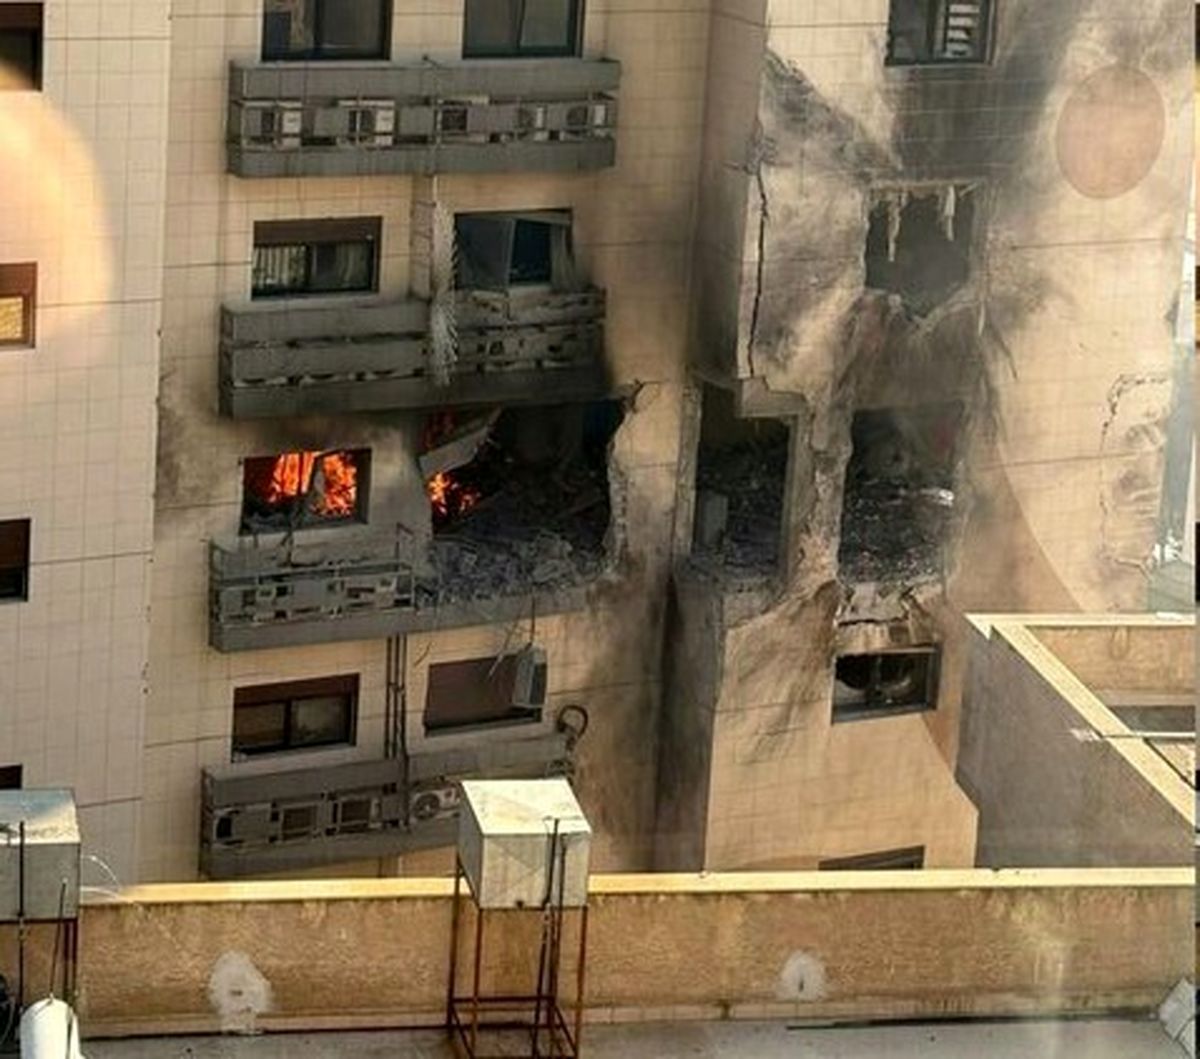 حمله اسرائیل به ساختمانی در محله مسکونی کفرسوسه در دمشق

